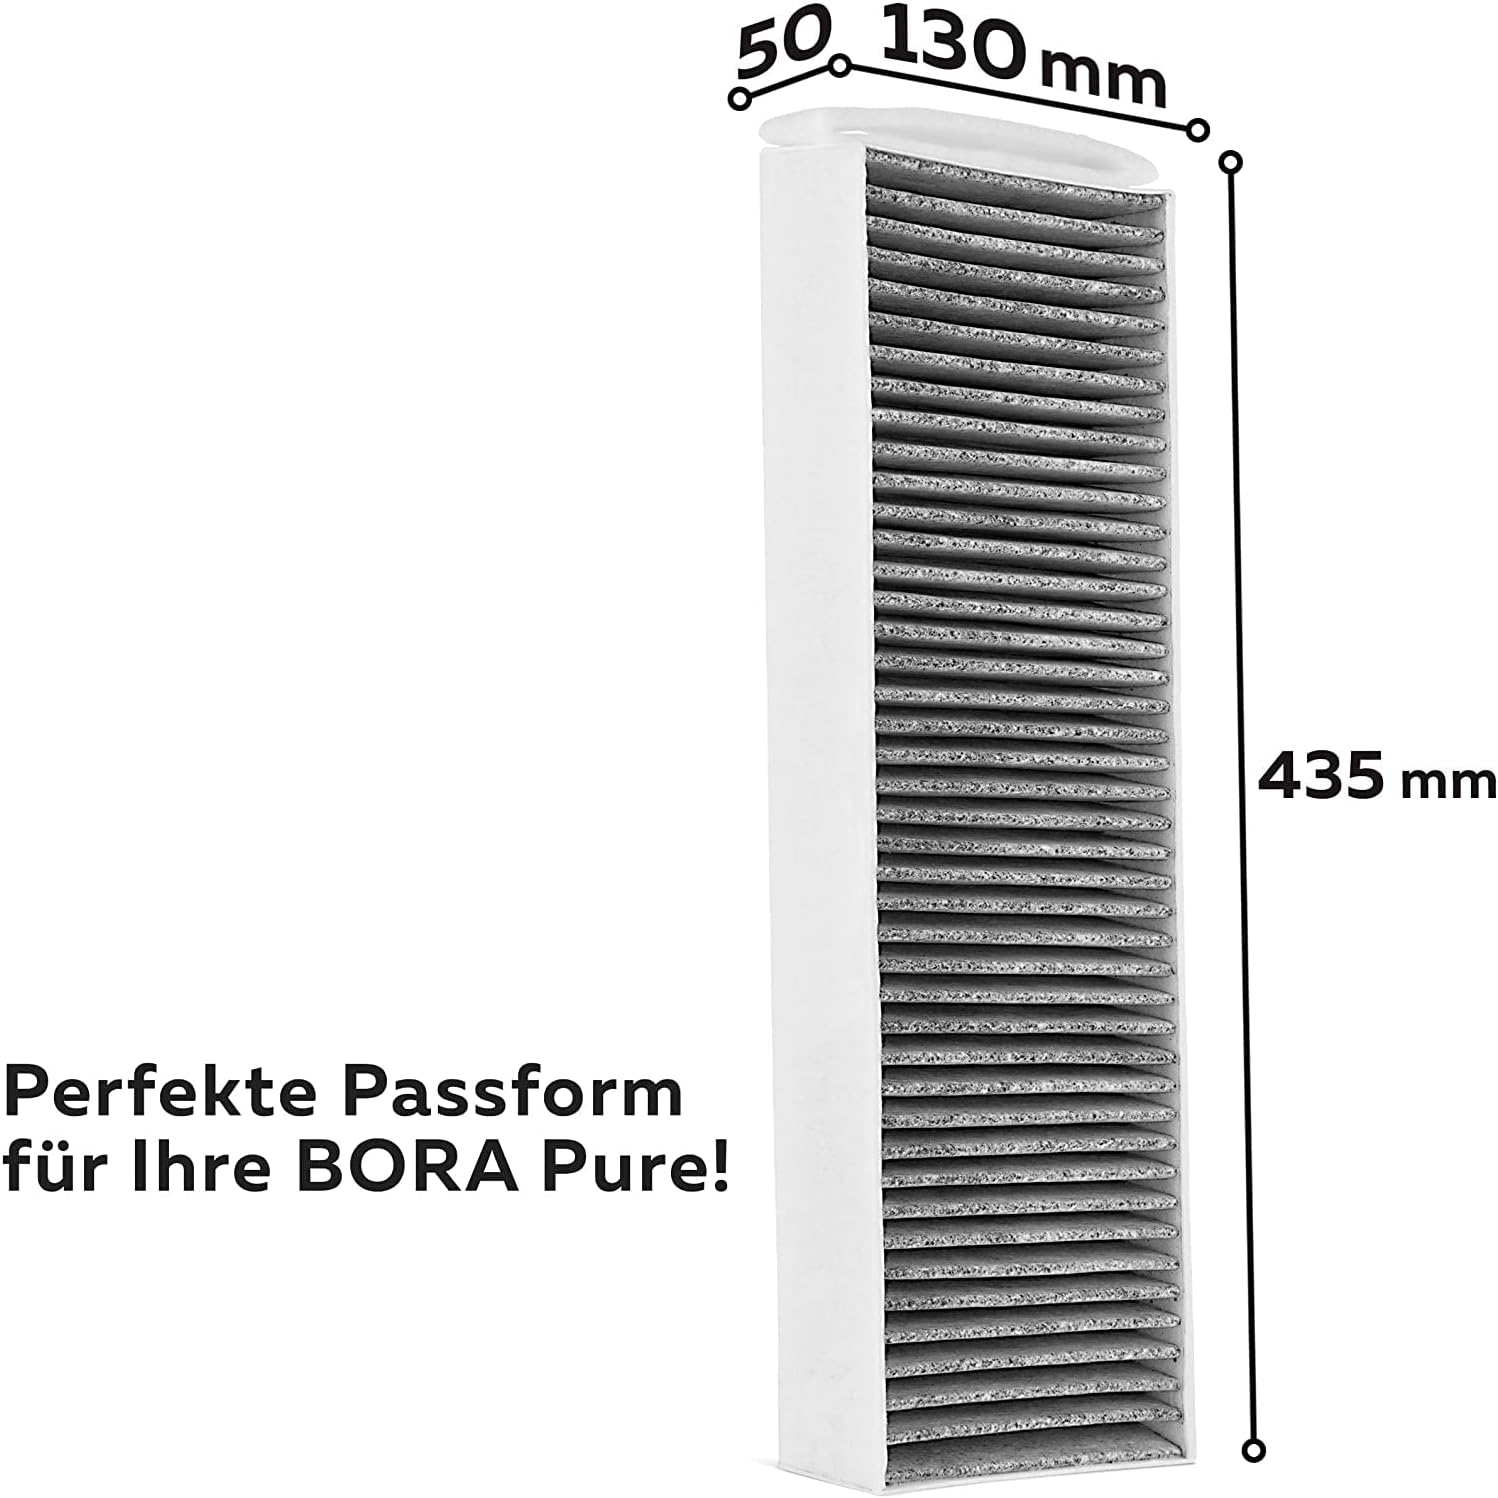 Aktivkohlefilter-Set (3 Filter) für Bora Pure Puakf, für Ihr Umluftkochfeld PURU oder PUXU - 3er Pack